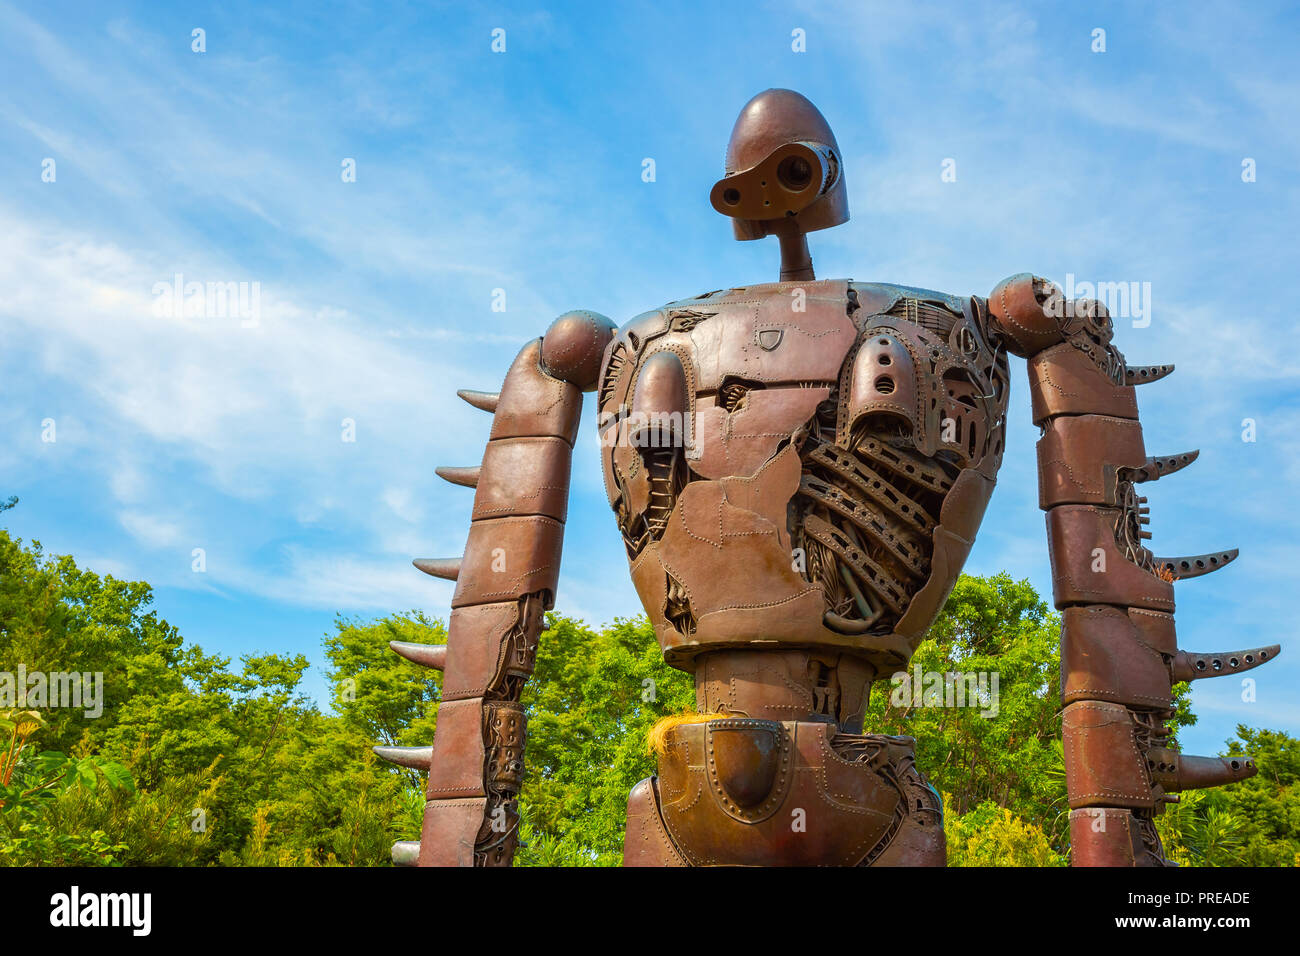 Tokio, Japón - El 29 de abril de 2018: Estatua del robot desde el Studio  Ghibli película "Laputa: el castillo en el cielo' en Ghibli museum  Fotografía de stock - Alamy